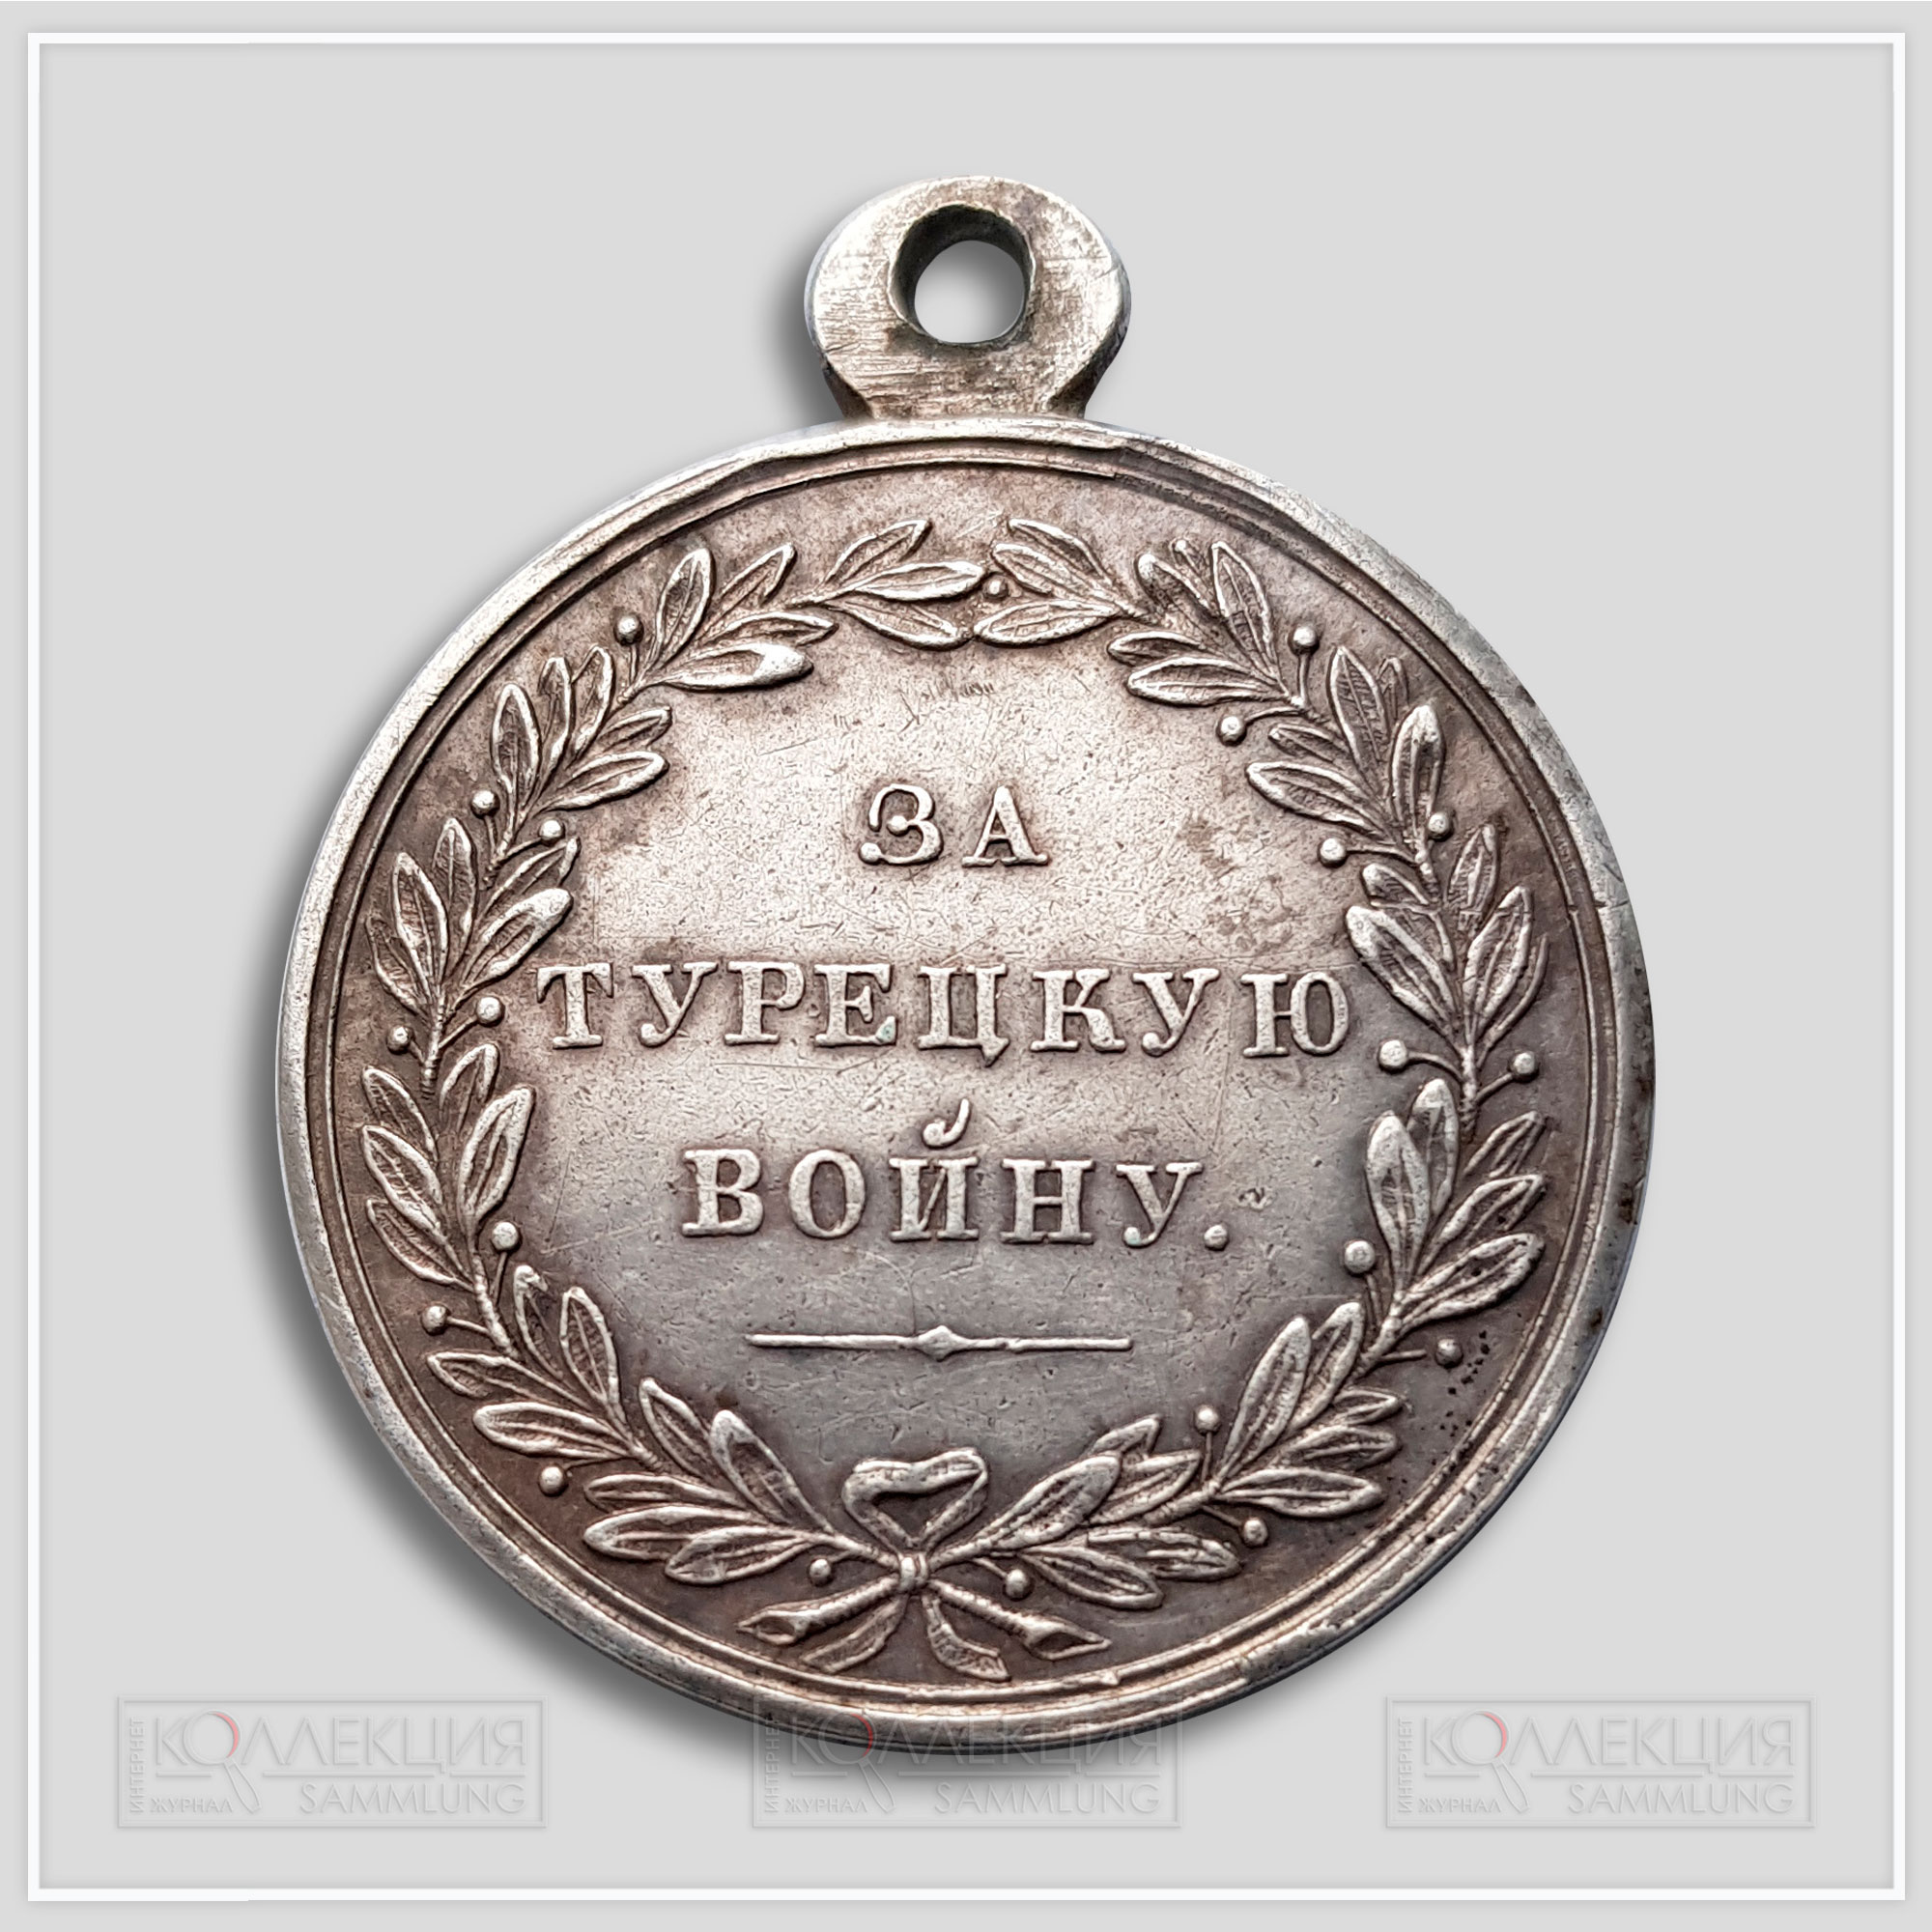 Медаль "За Турецкую войну" 1828-1829